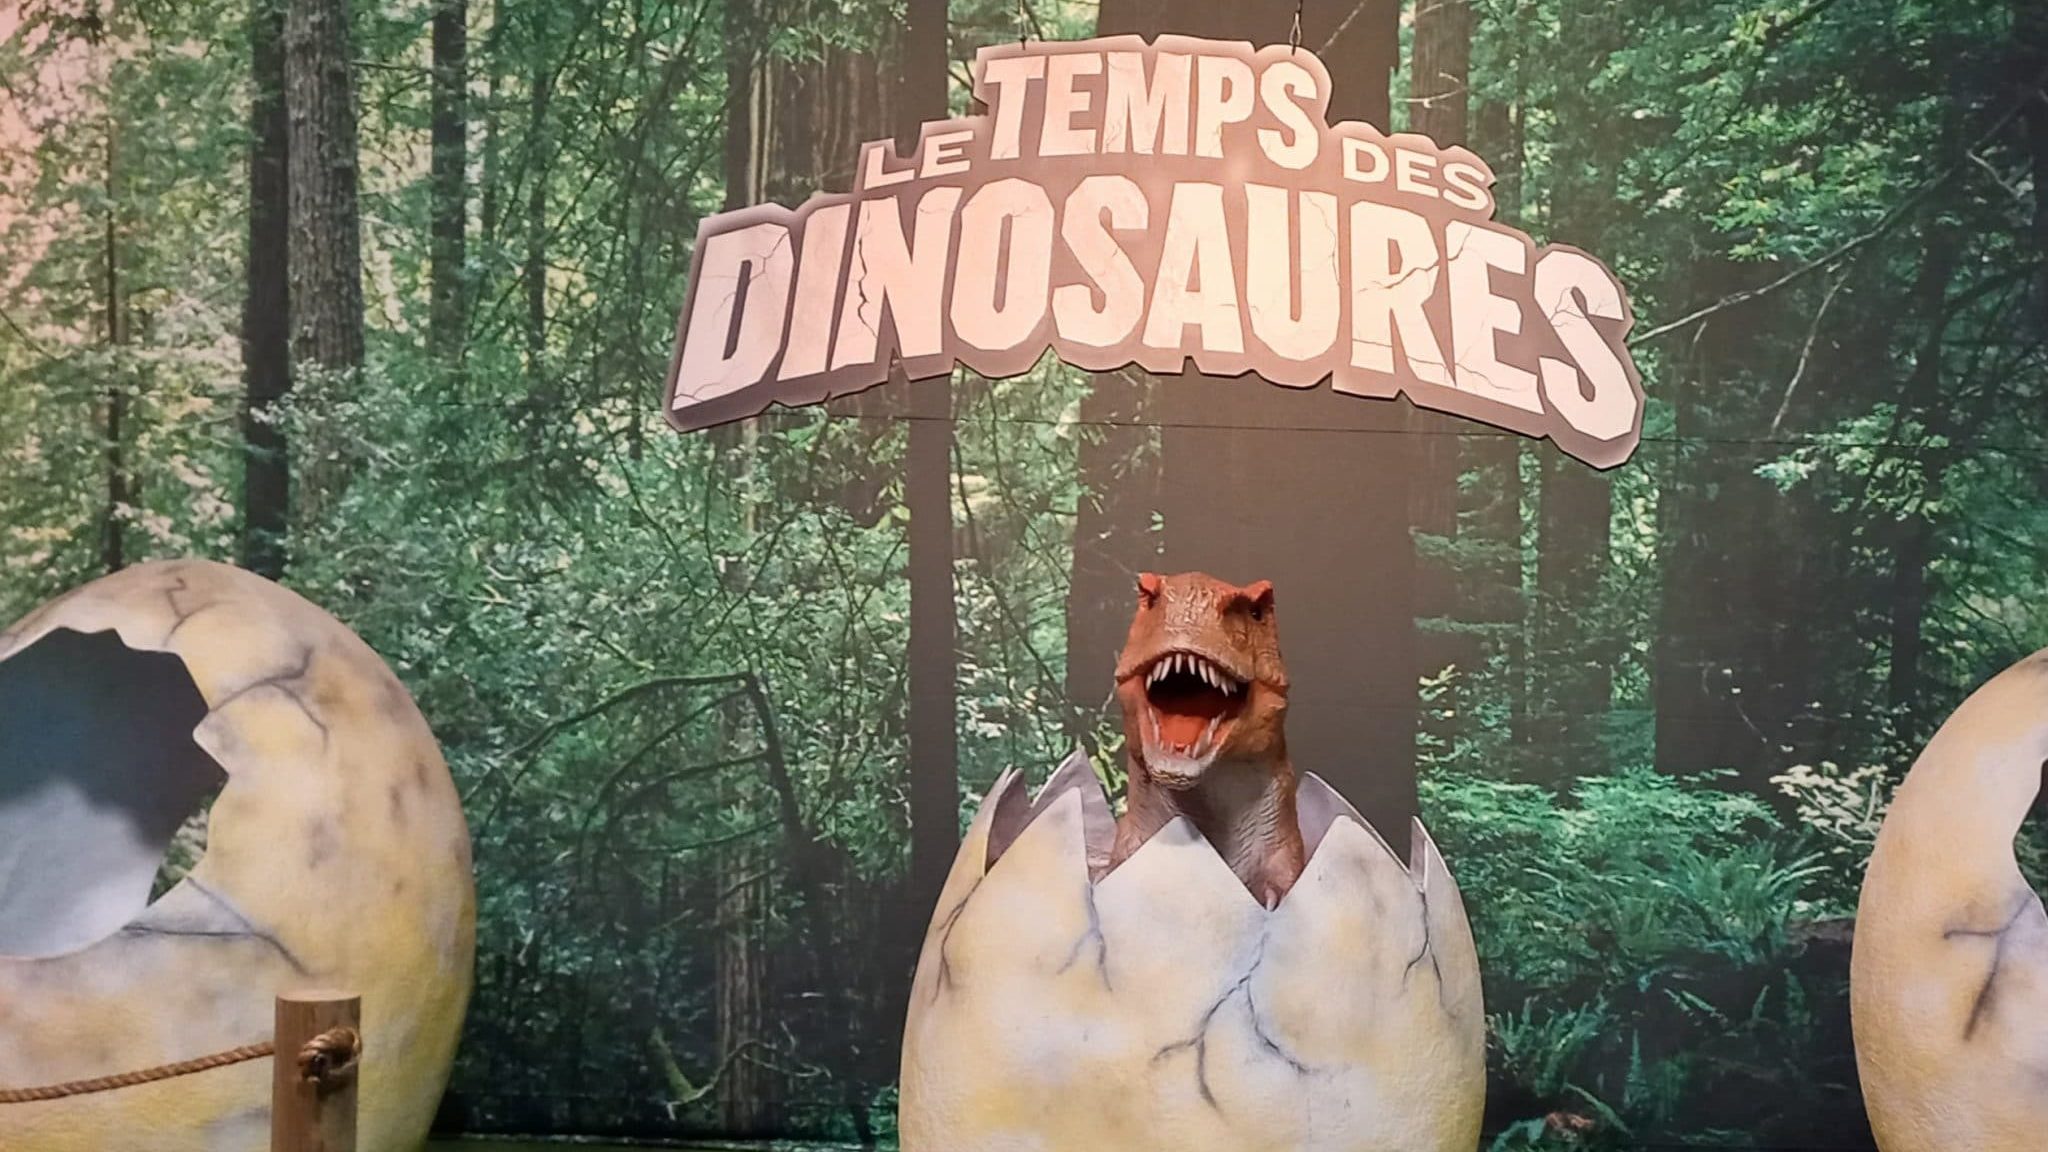 Le temps des dinosaures : rencontre avec des visiteurs